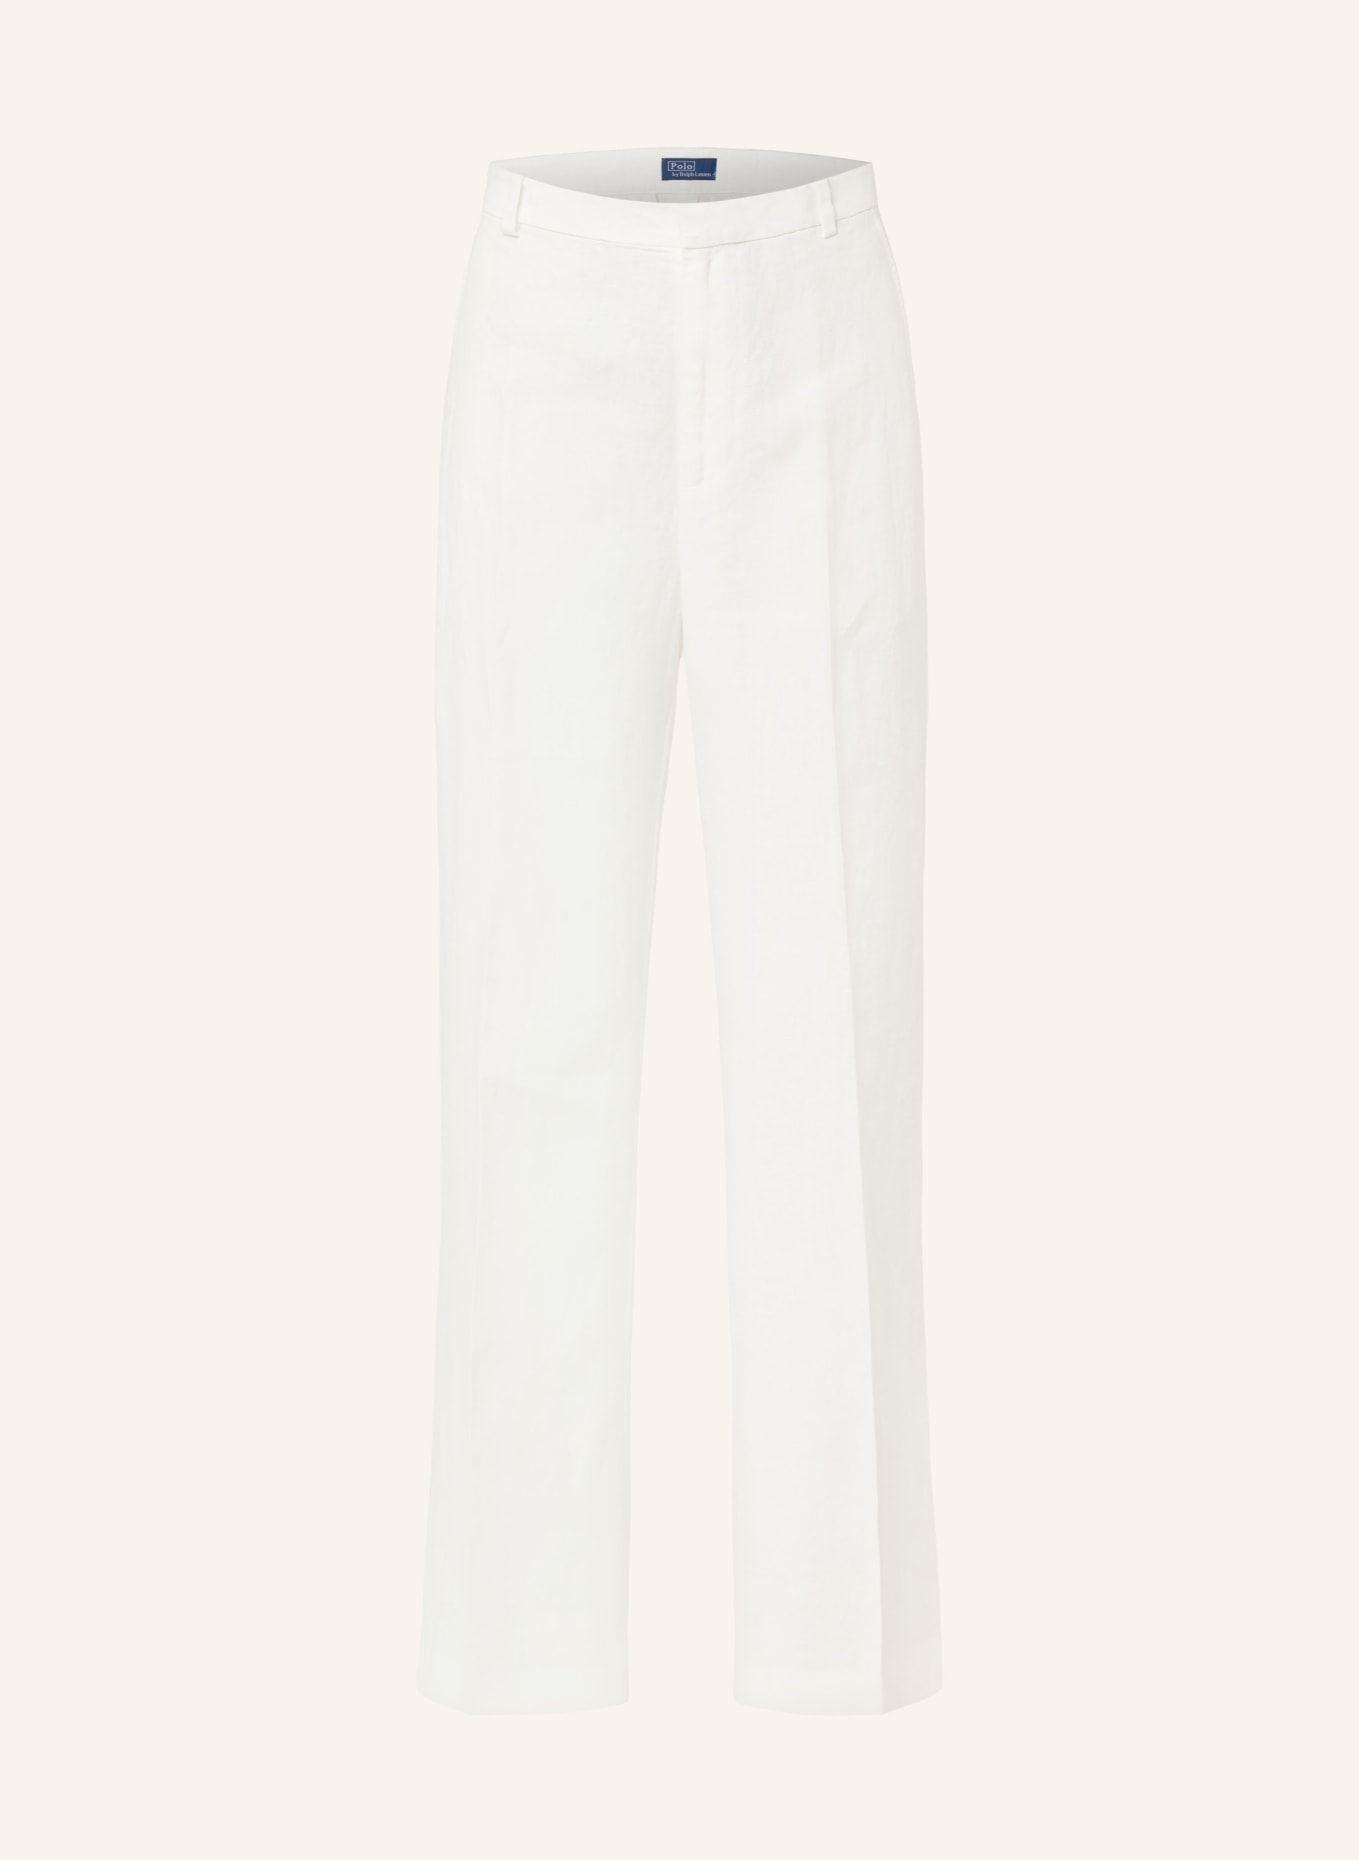 POLO RALPH LAUREN Linen trousers, Color: WHITE (Image 1)